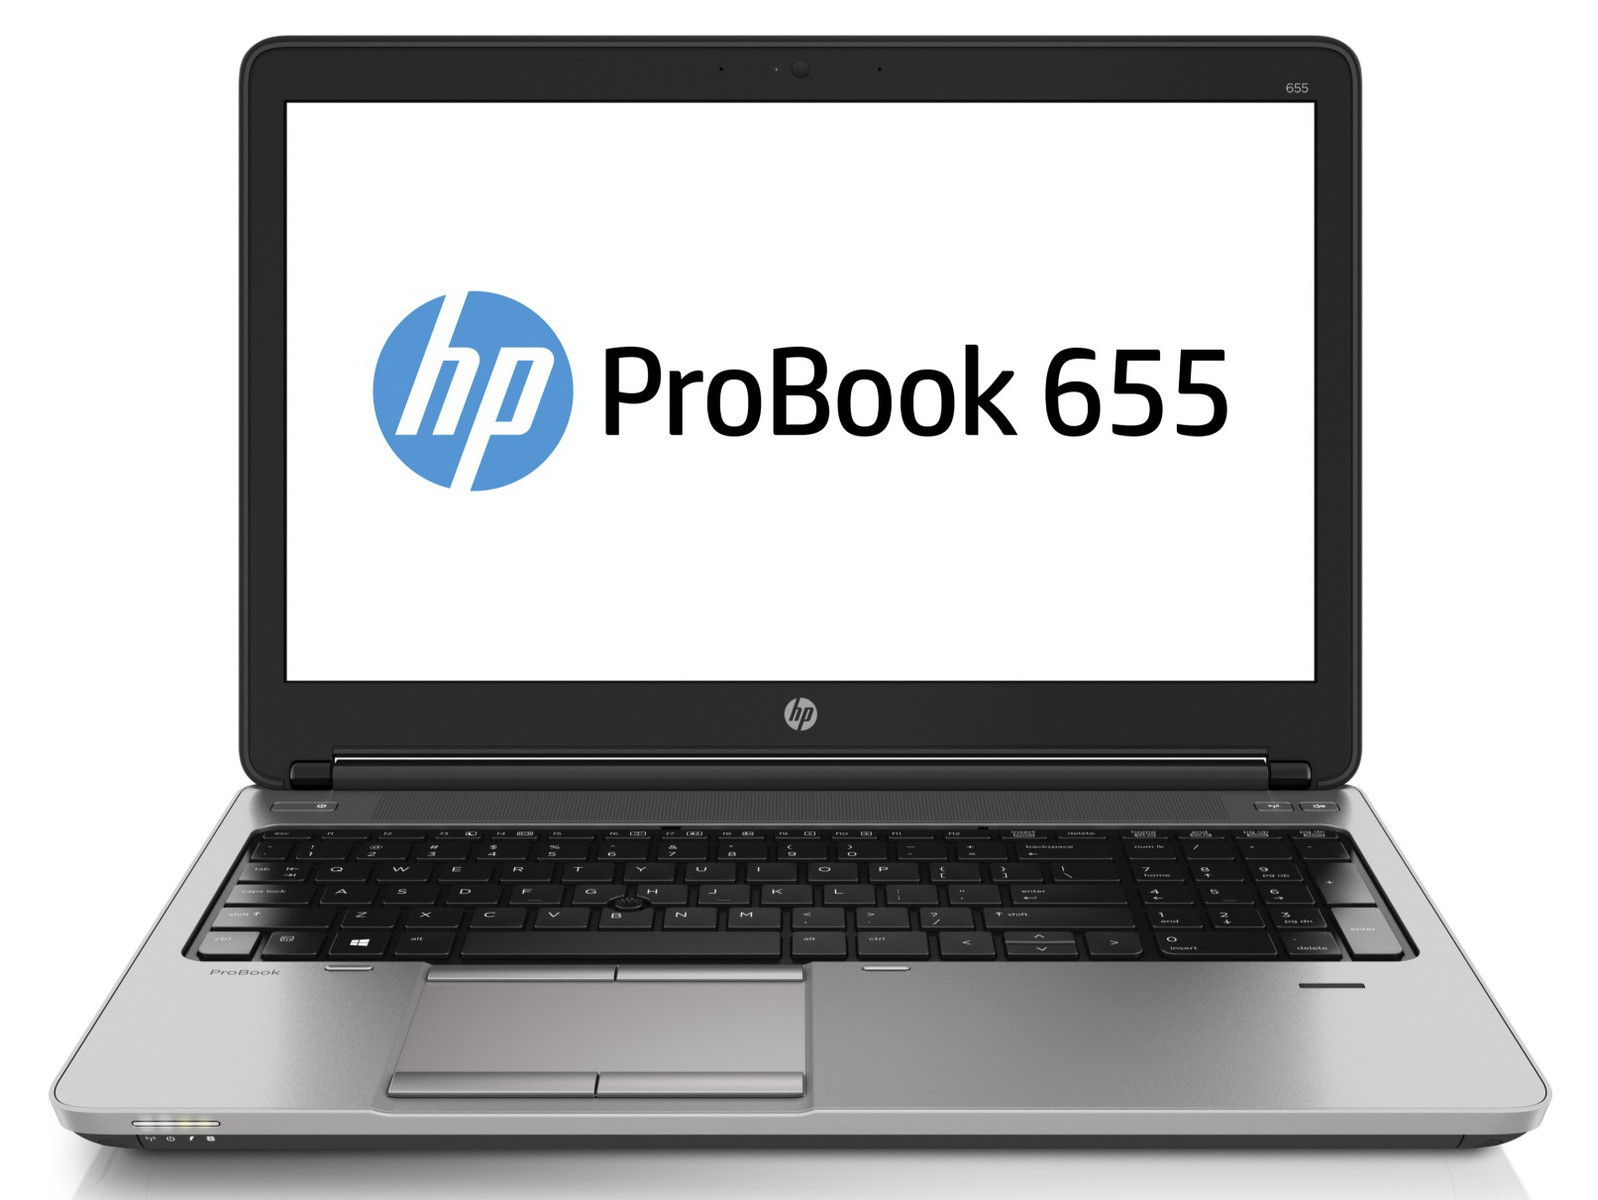 Laptop HP ProBook 655 G1, AMD A8-5550M 2.10GHz, 4GB DDR3, 320GB SATA, DVD-RW, 15.6 Inch